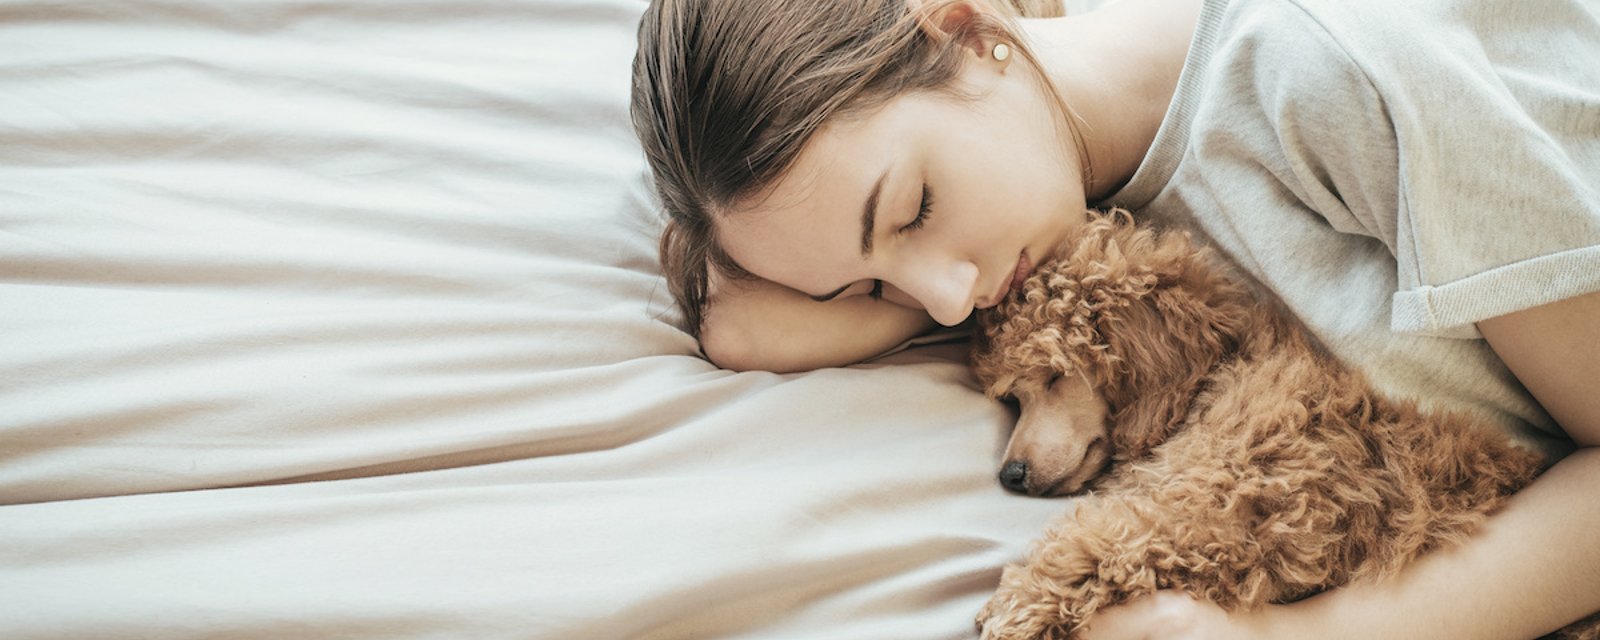 Selon une étude, les femmes dormiraient mieux en compagnie d'un chien